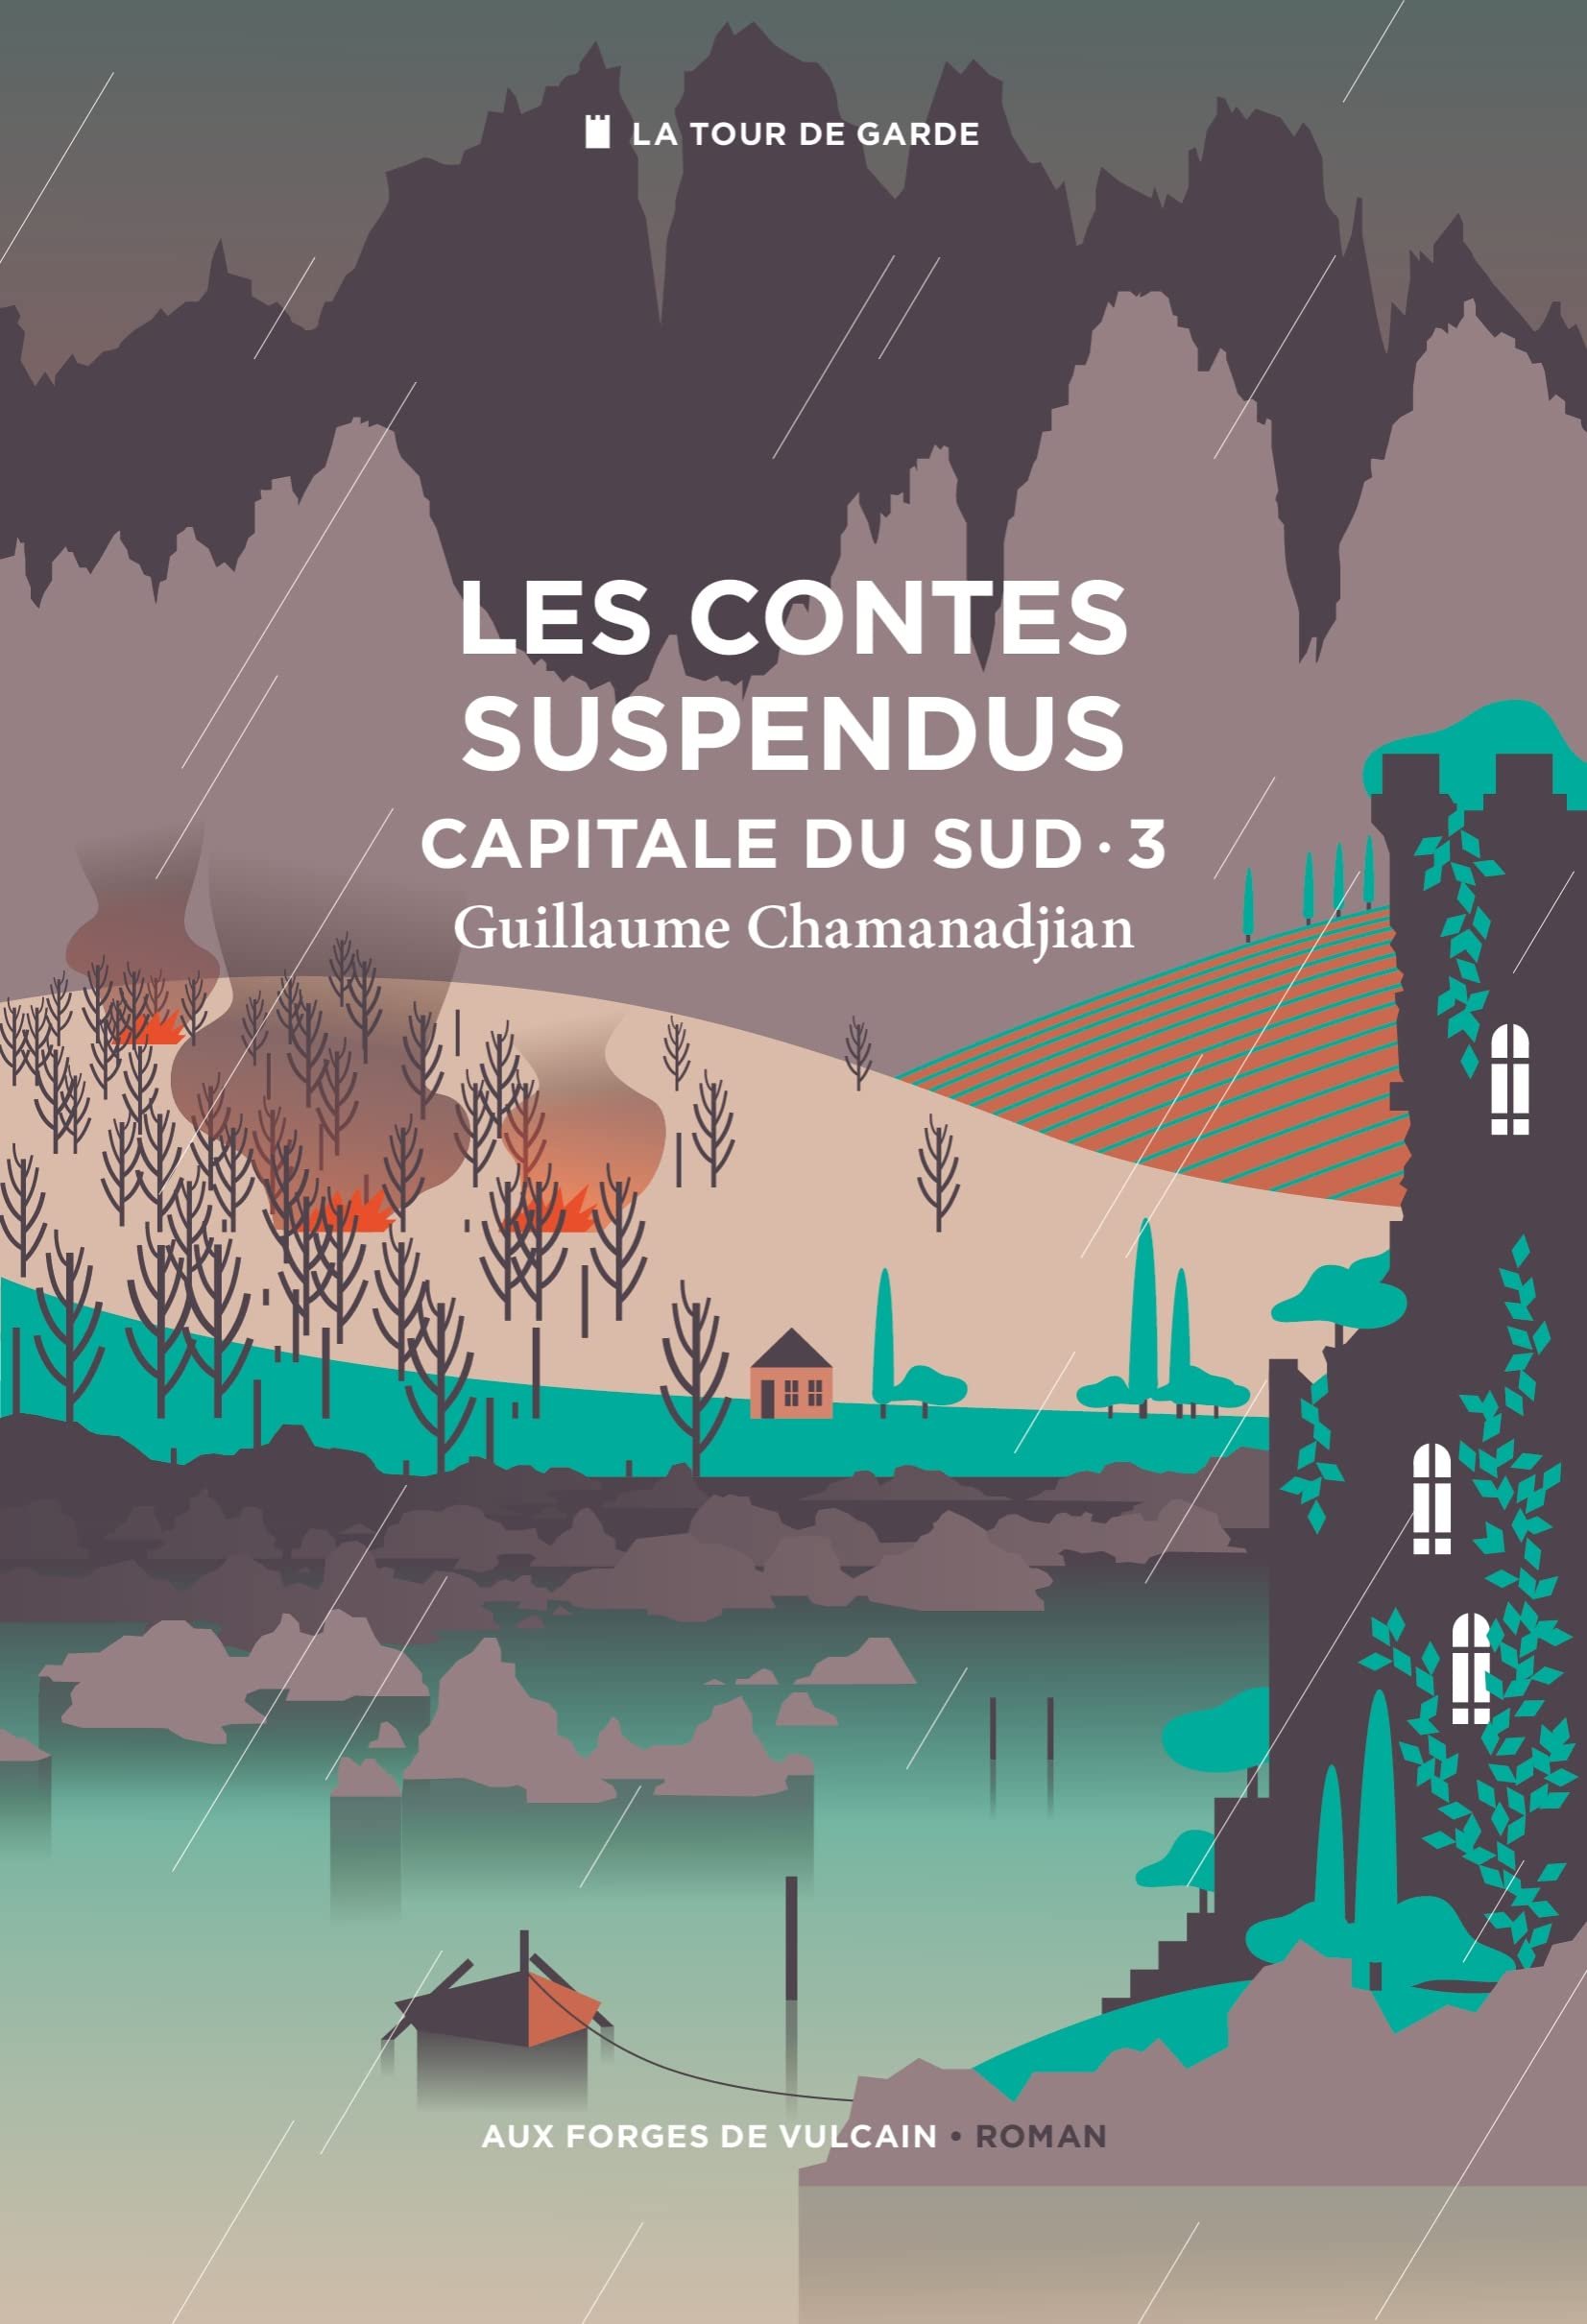 Guillaume Chamanadjian – Capitale du sud, Tome 3 : Les contes suspendus